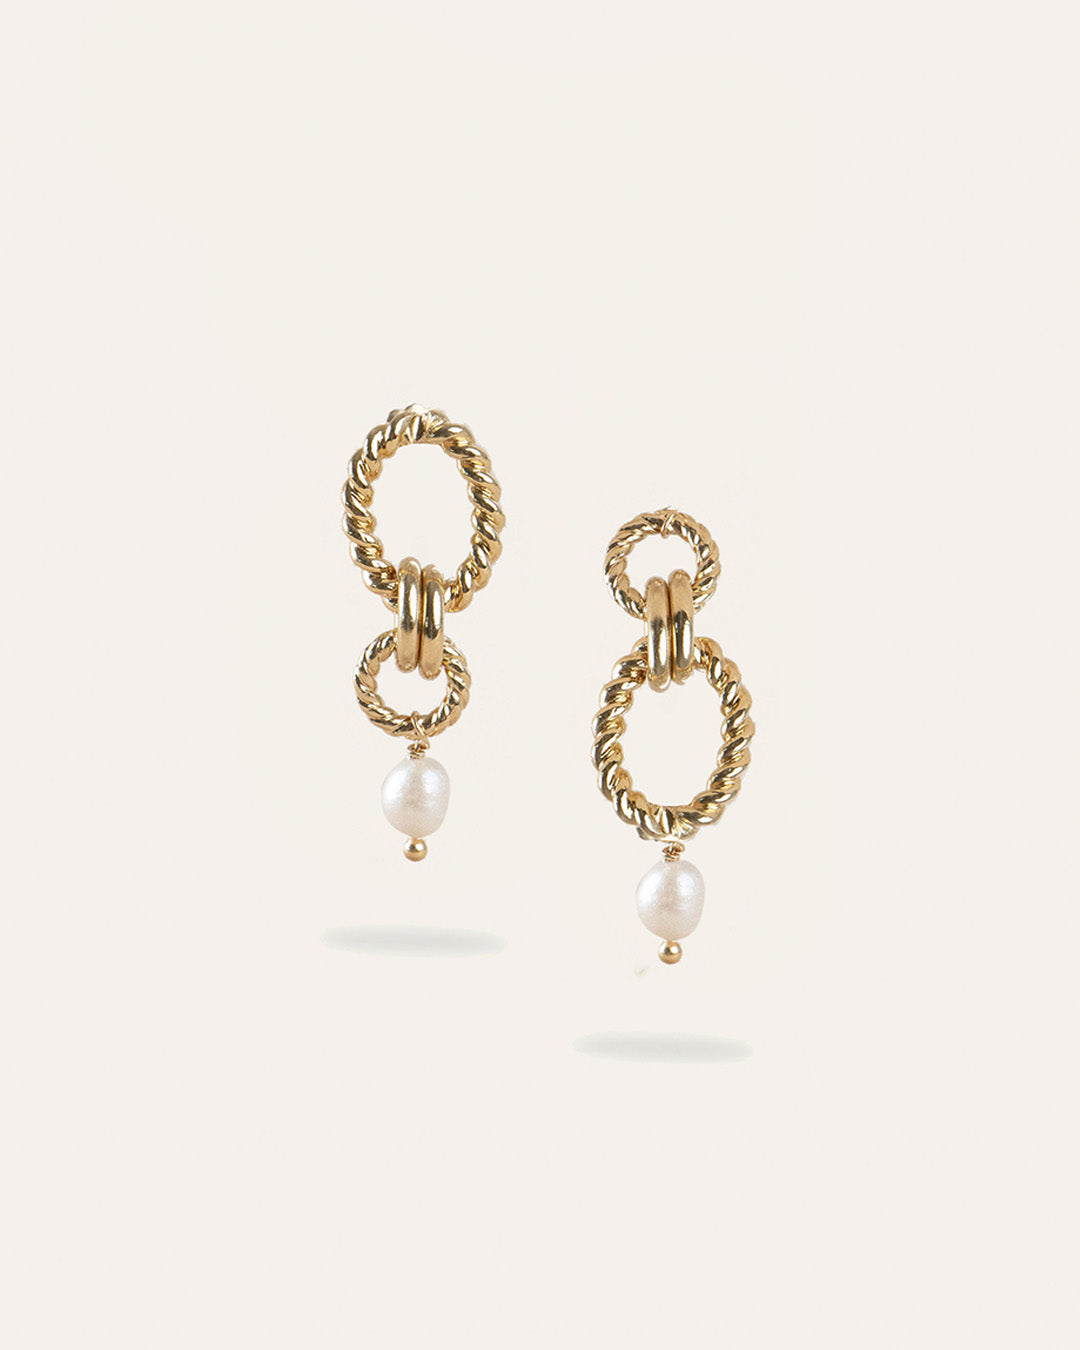 Boucles d'oreilles en plaqué or 3 microns composées de deux anneaux torsadés et de deux anneaux lisses de différentes tailles avec une perle de culture pendante fabriquées en France.